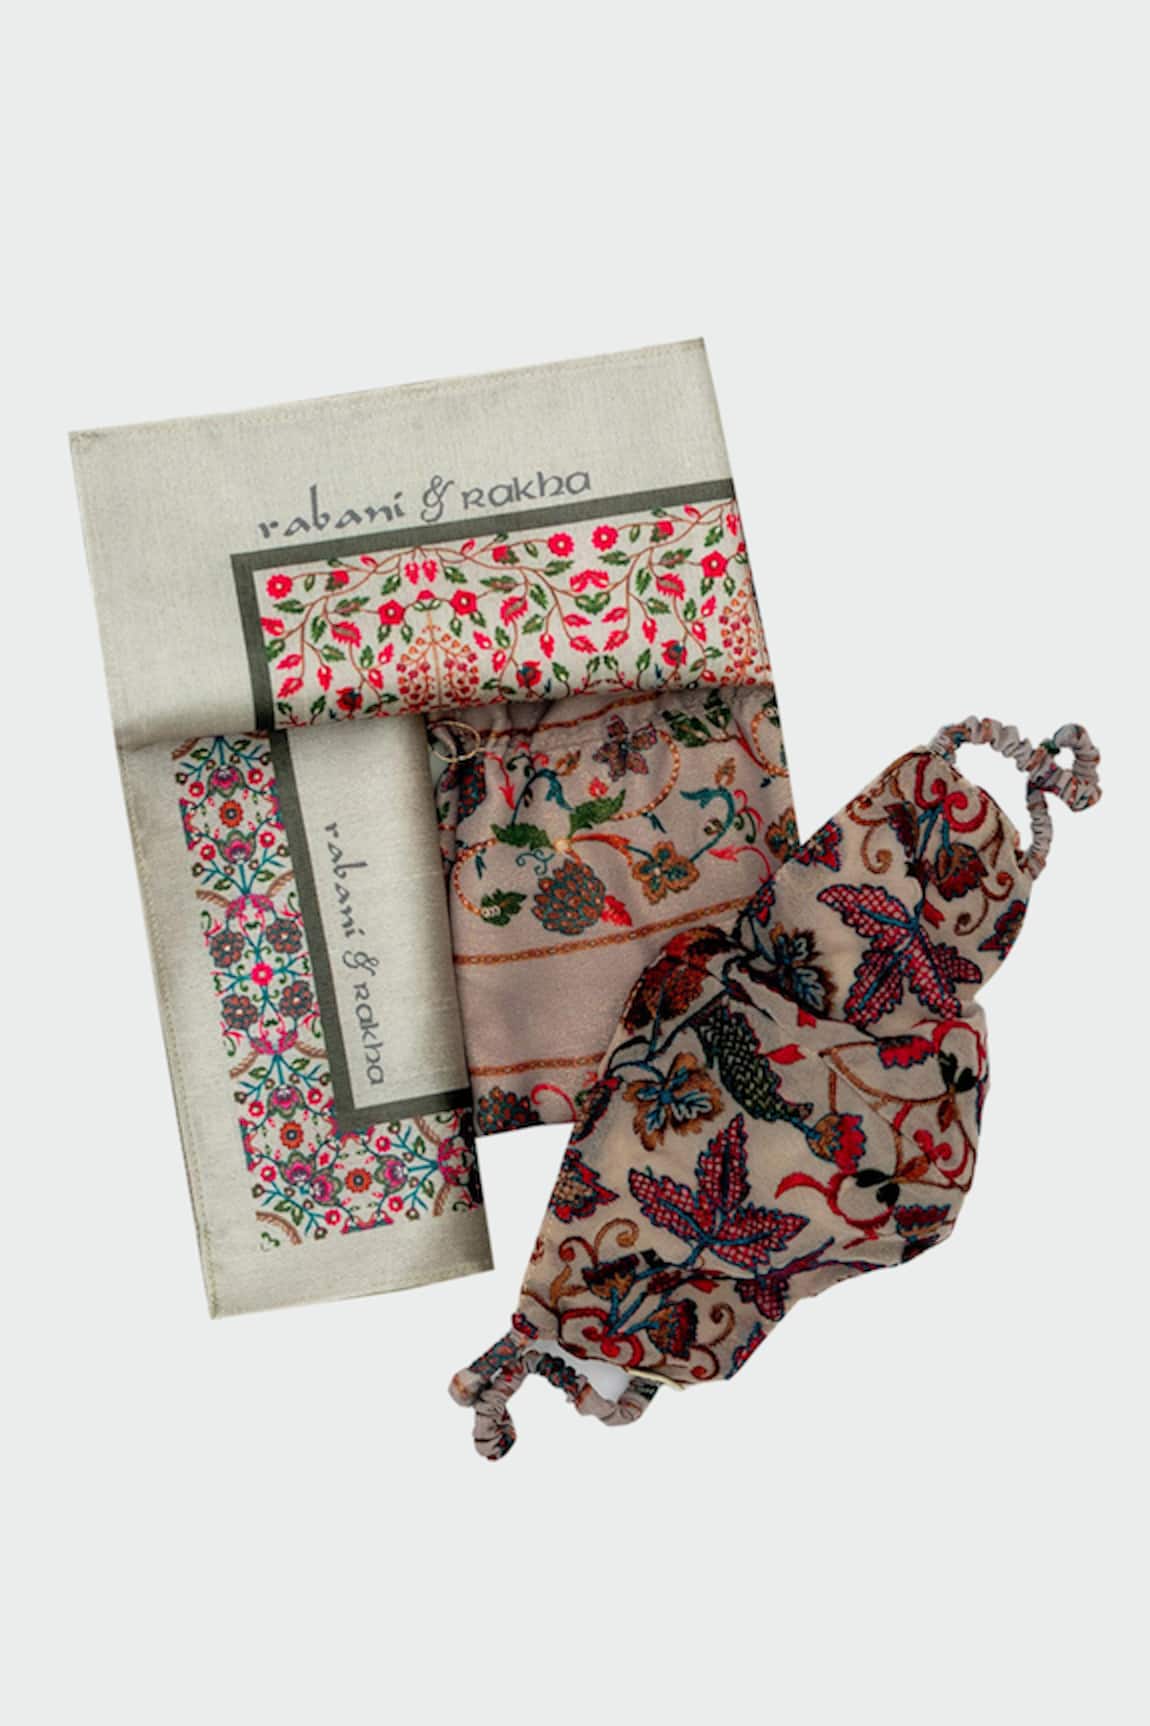 Rabani & Rakha Face Mask & Pocket Square Gift Box 